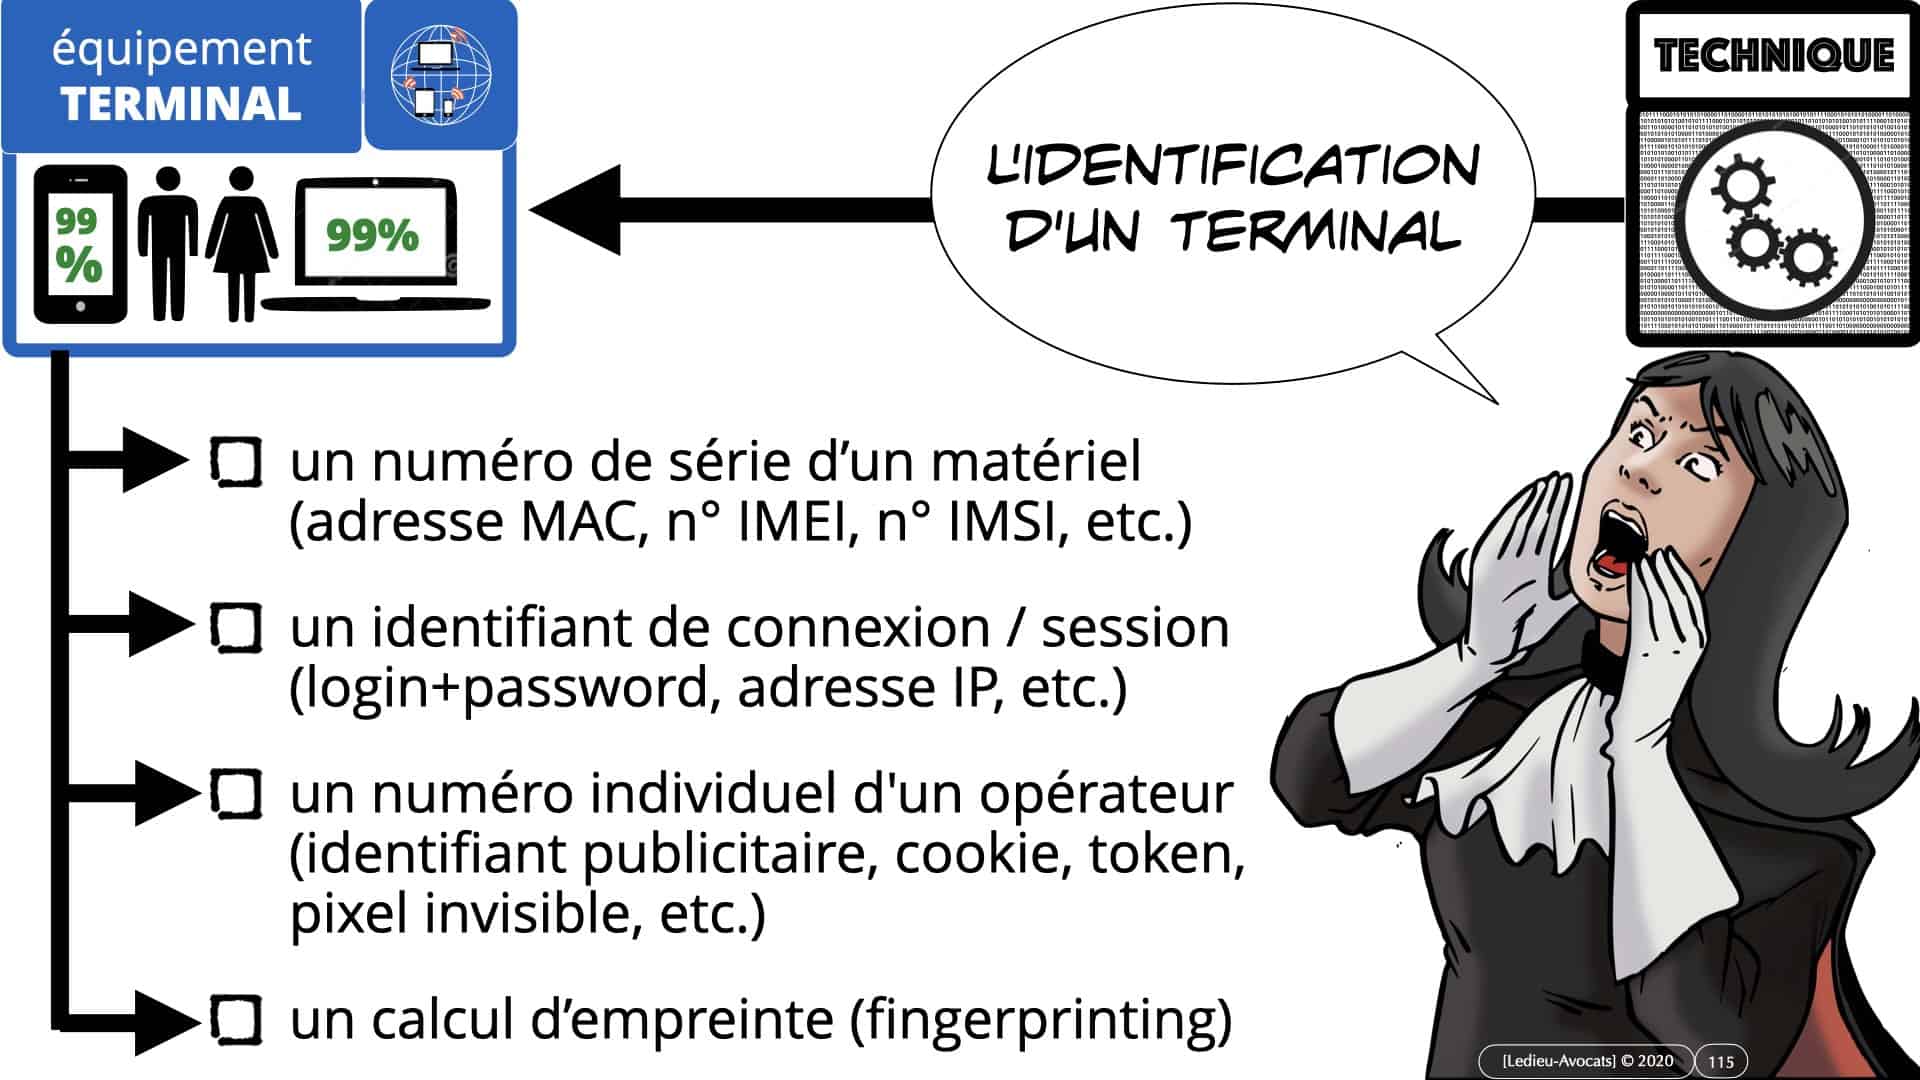 RGPD e-Privacy données personnelles jurisprudence formation Lamy Les Echos 10-02-2021 ©Ledieu-Avocats